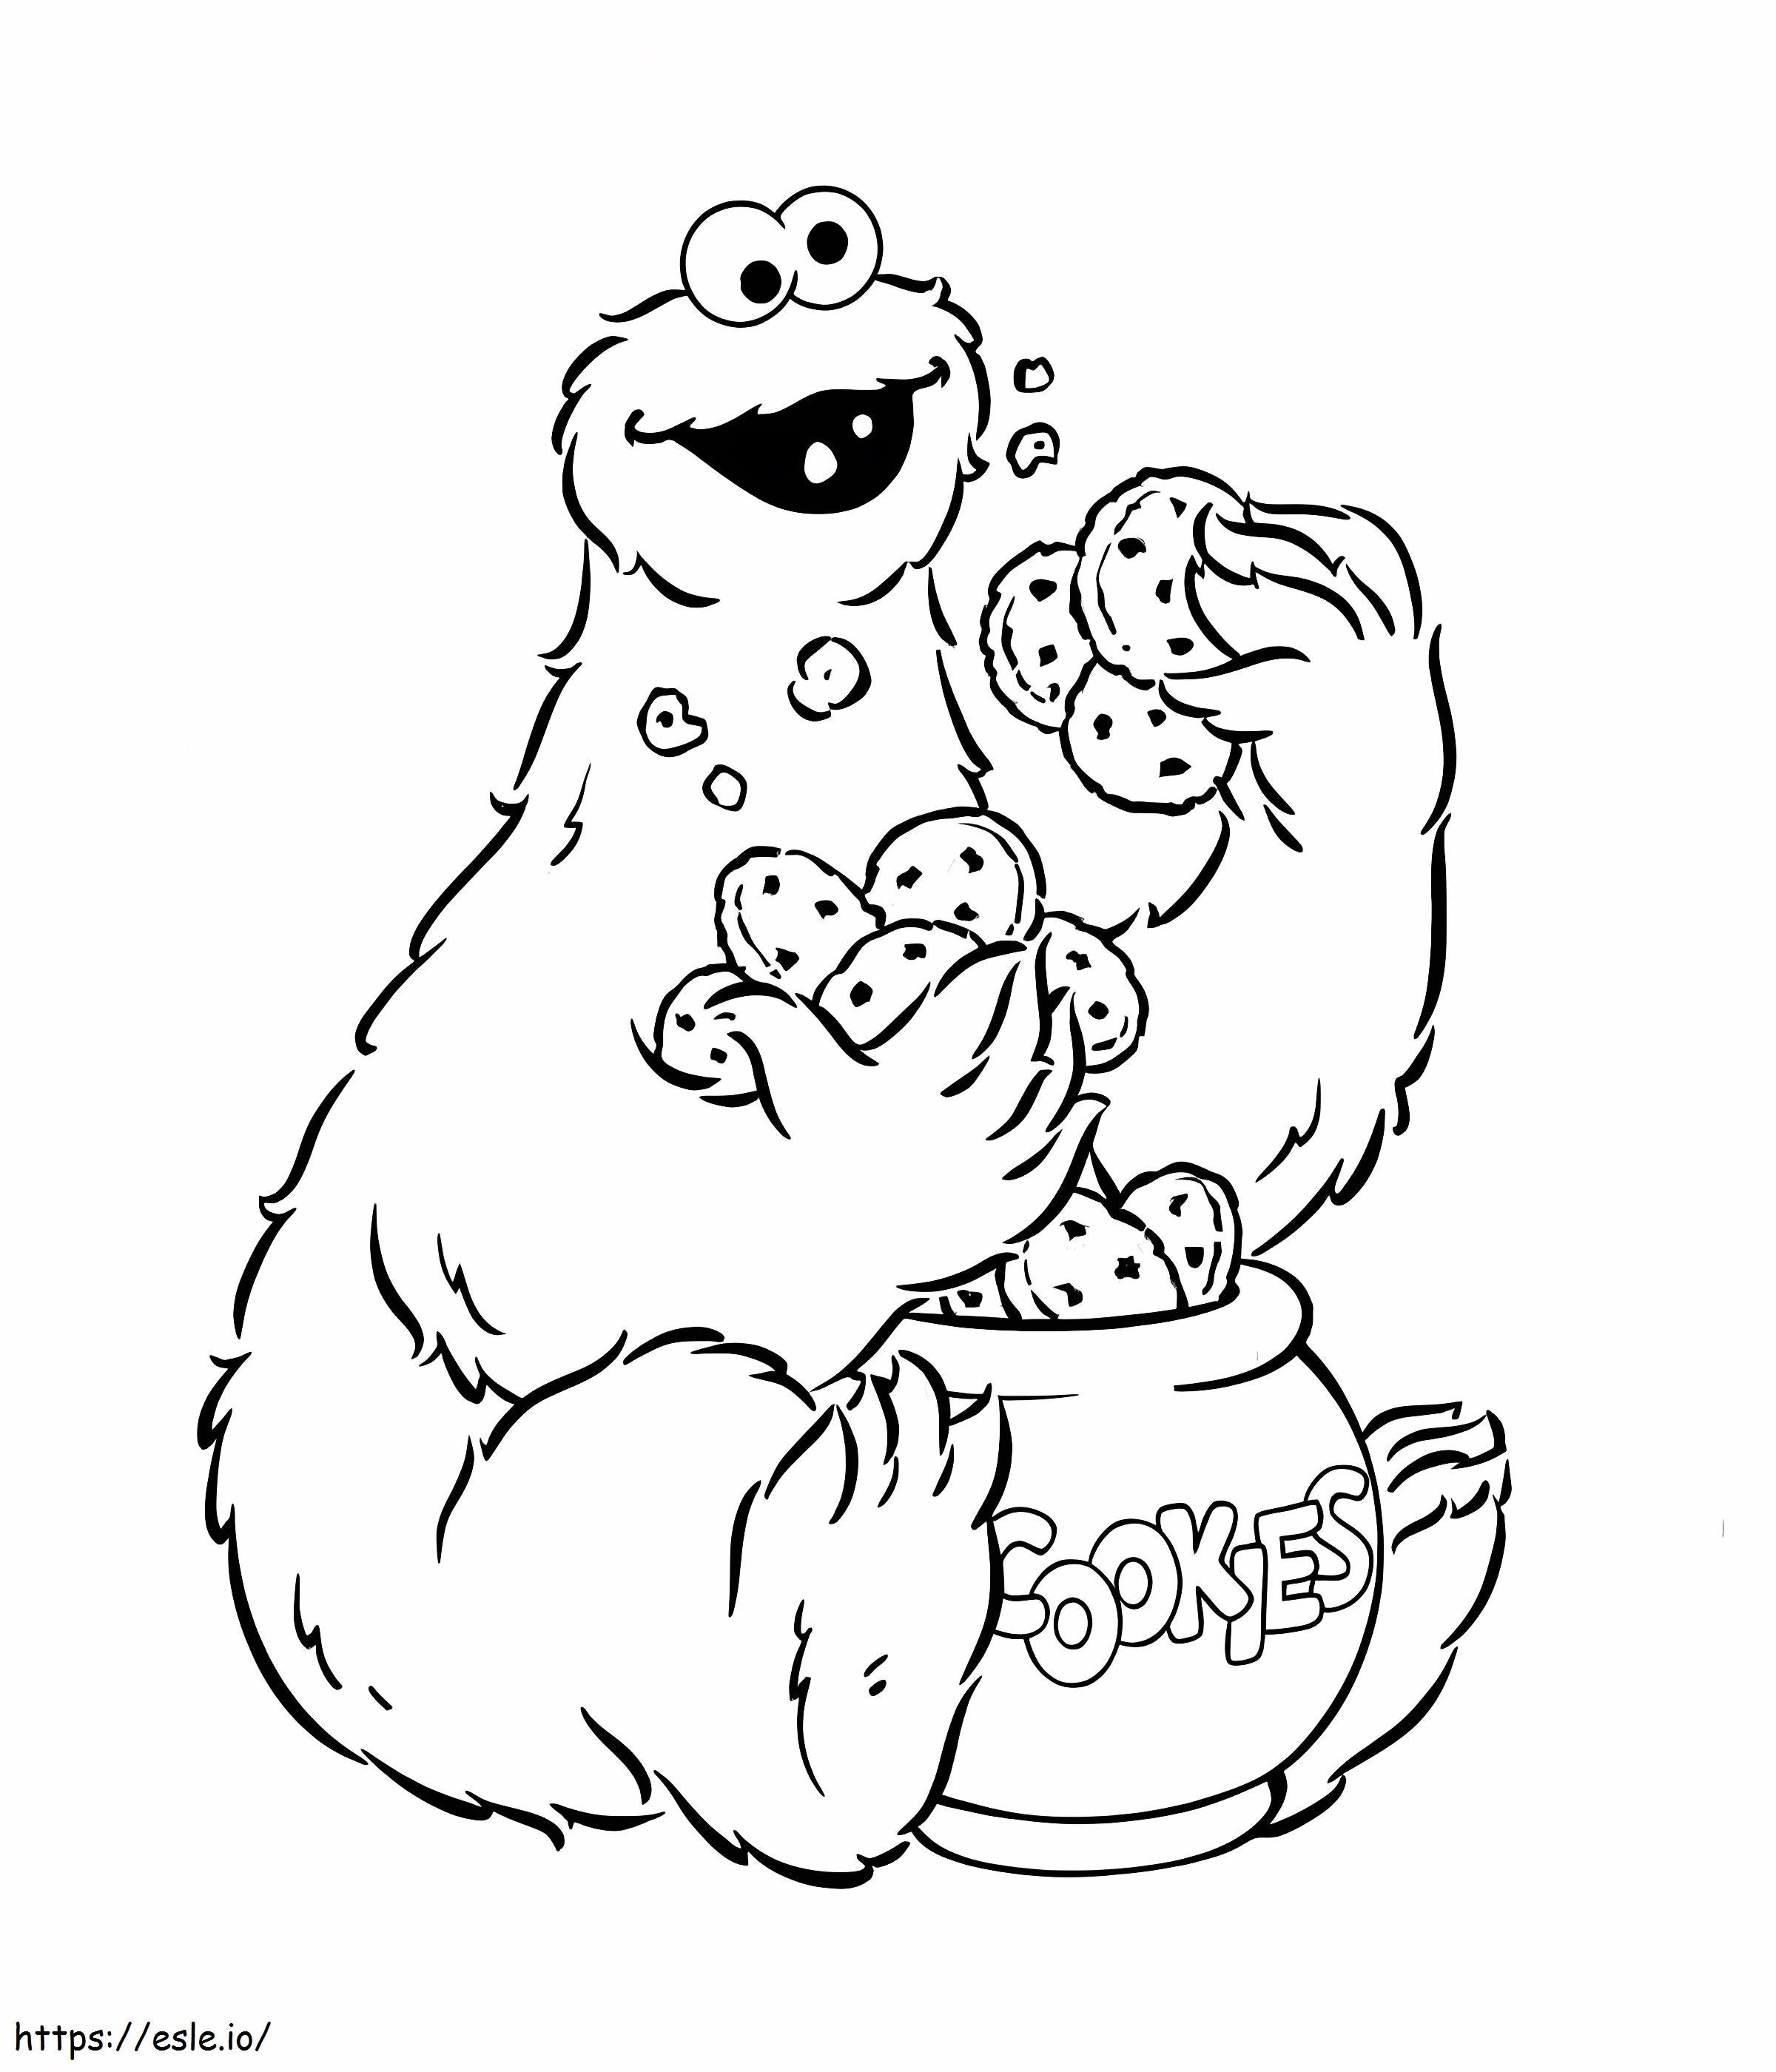 Cookie Monster che mangia i biscotti da colorare